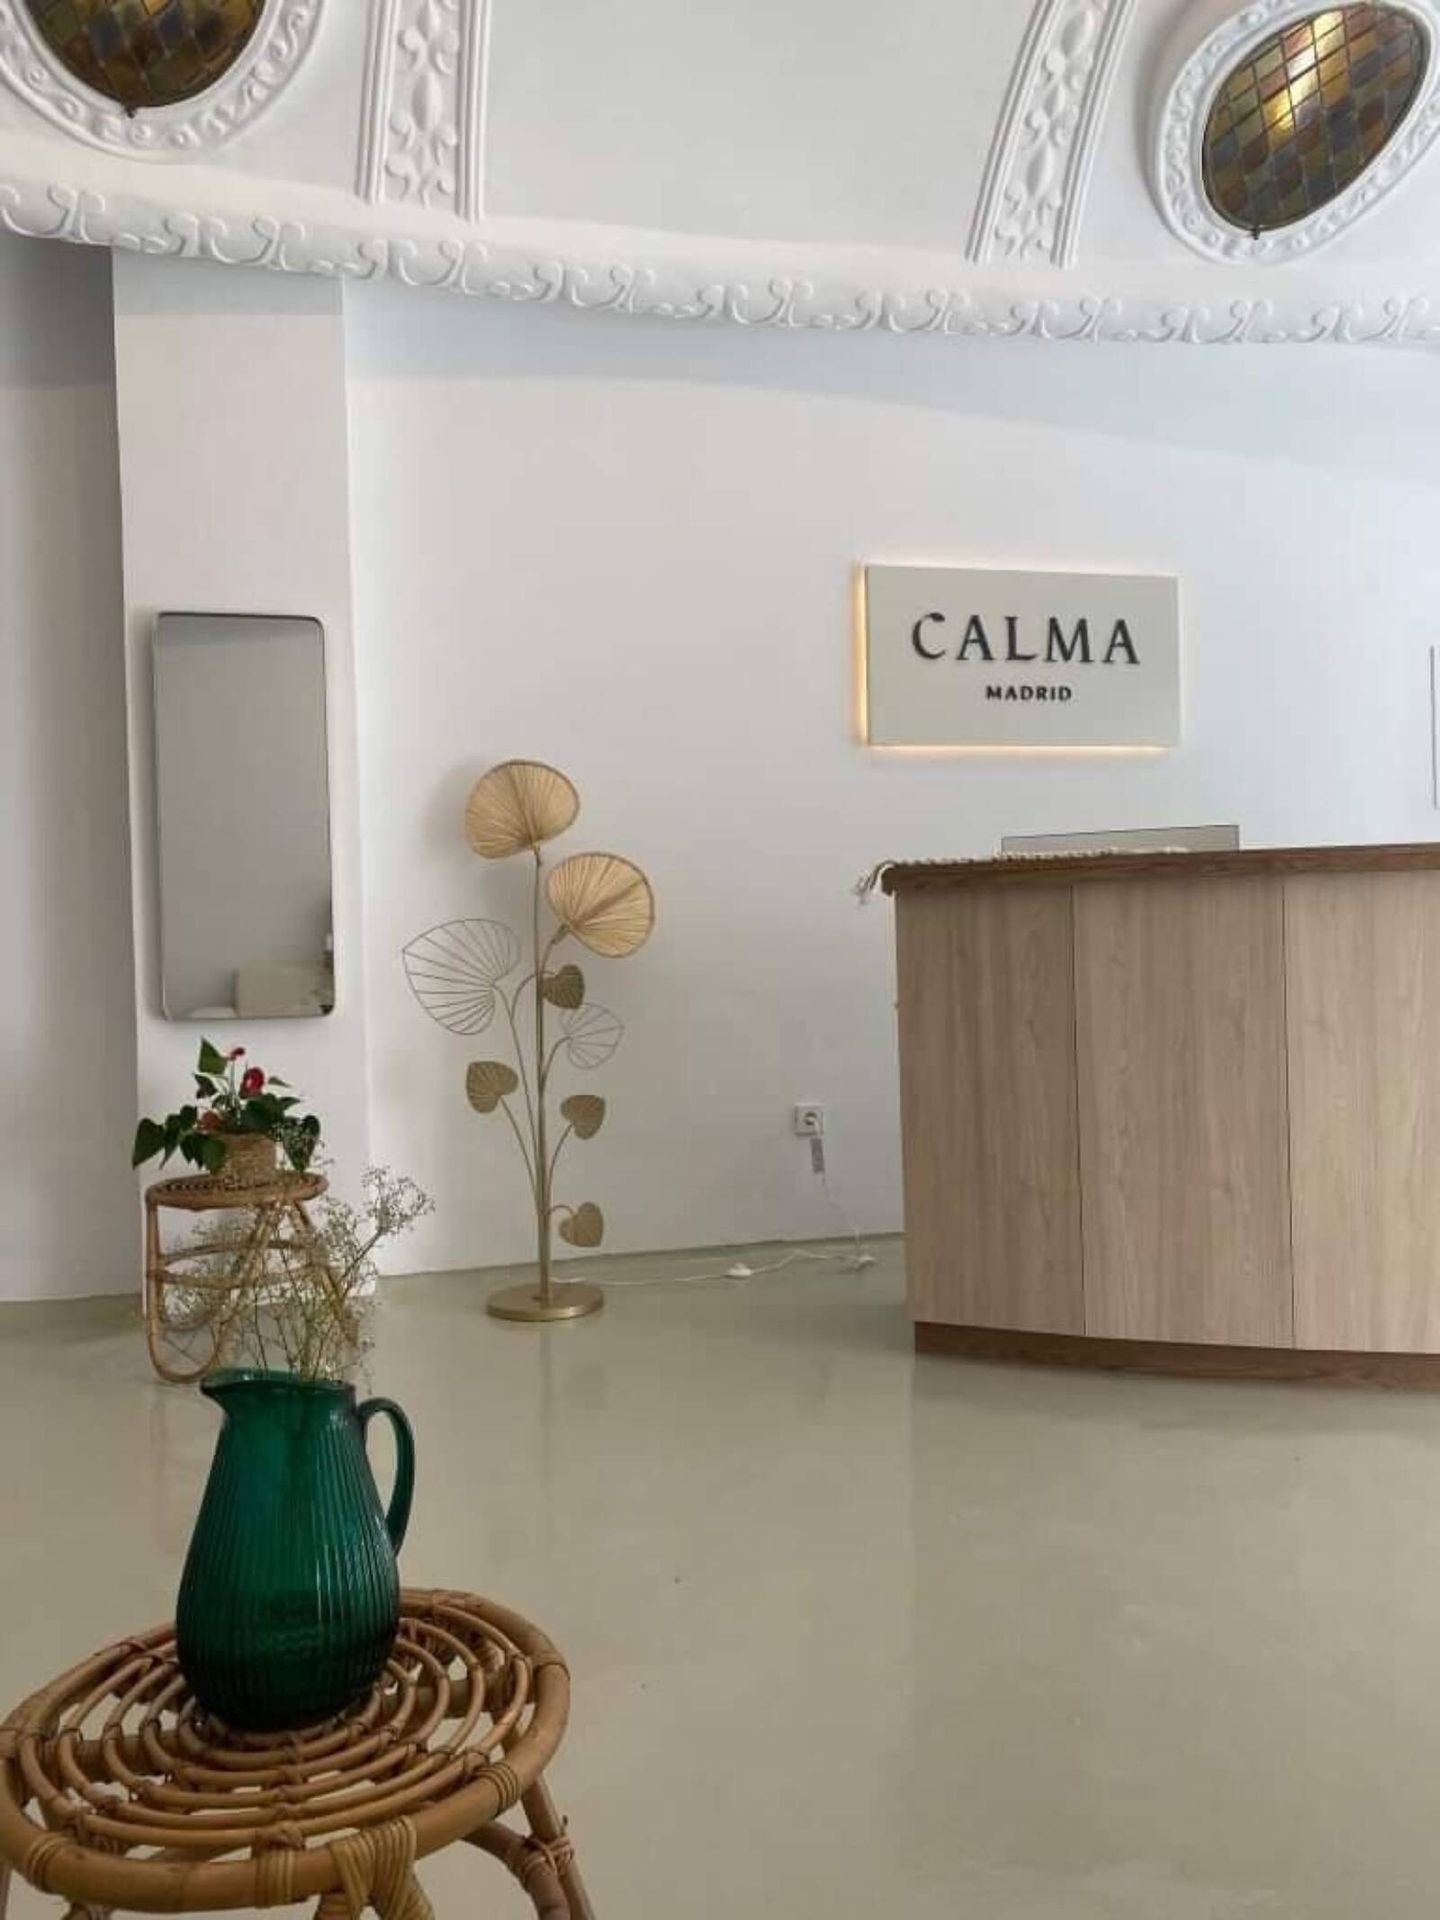 Una imagen del centro de spa del bienestar Calma Madrid, de sus stories. (Instagram/@calma_madrid)